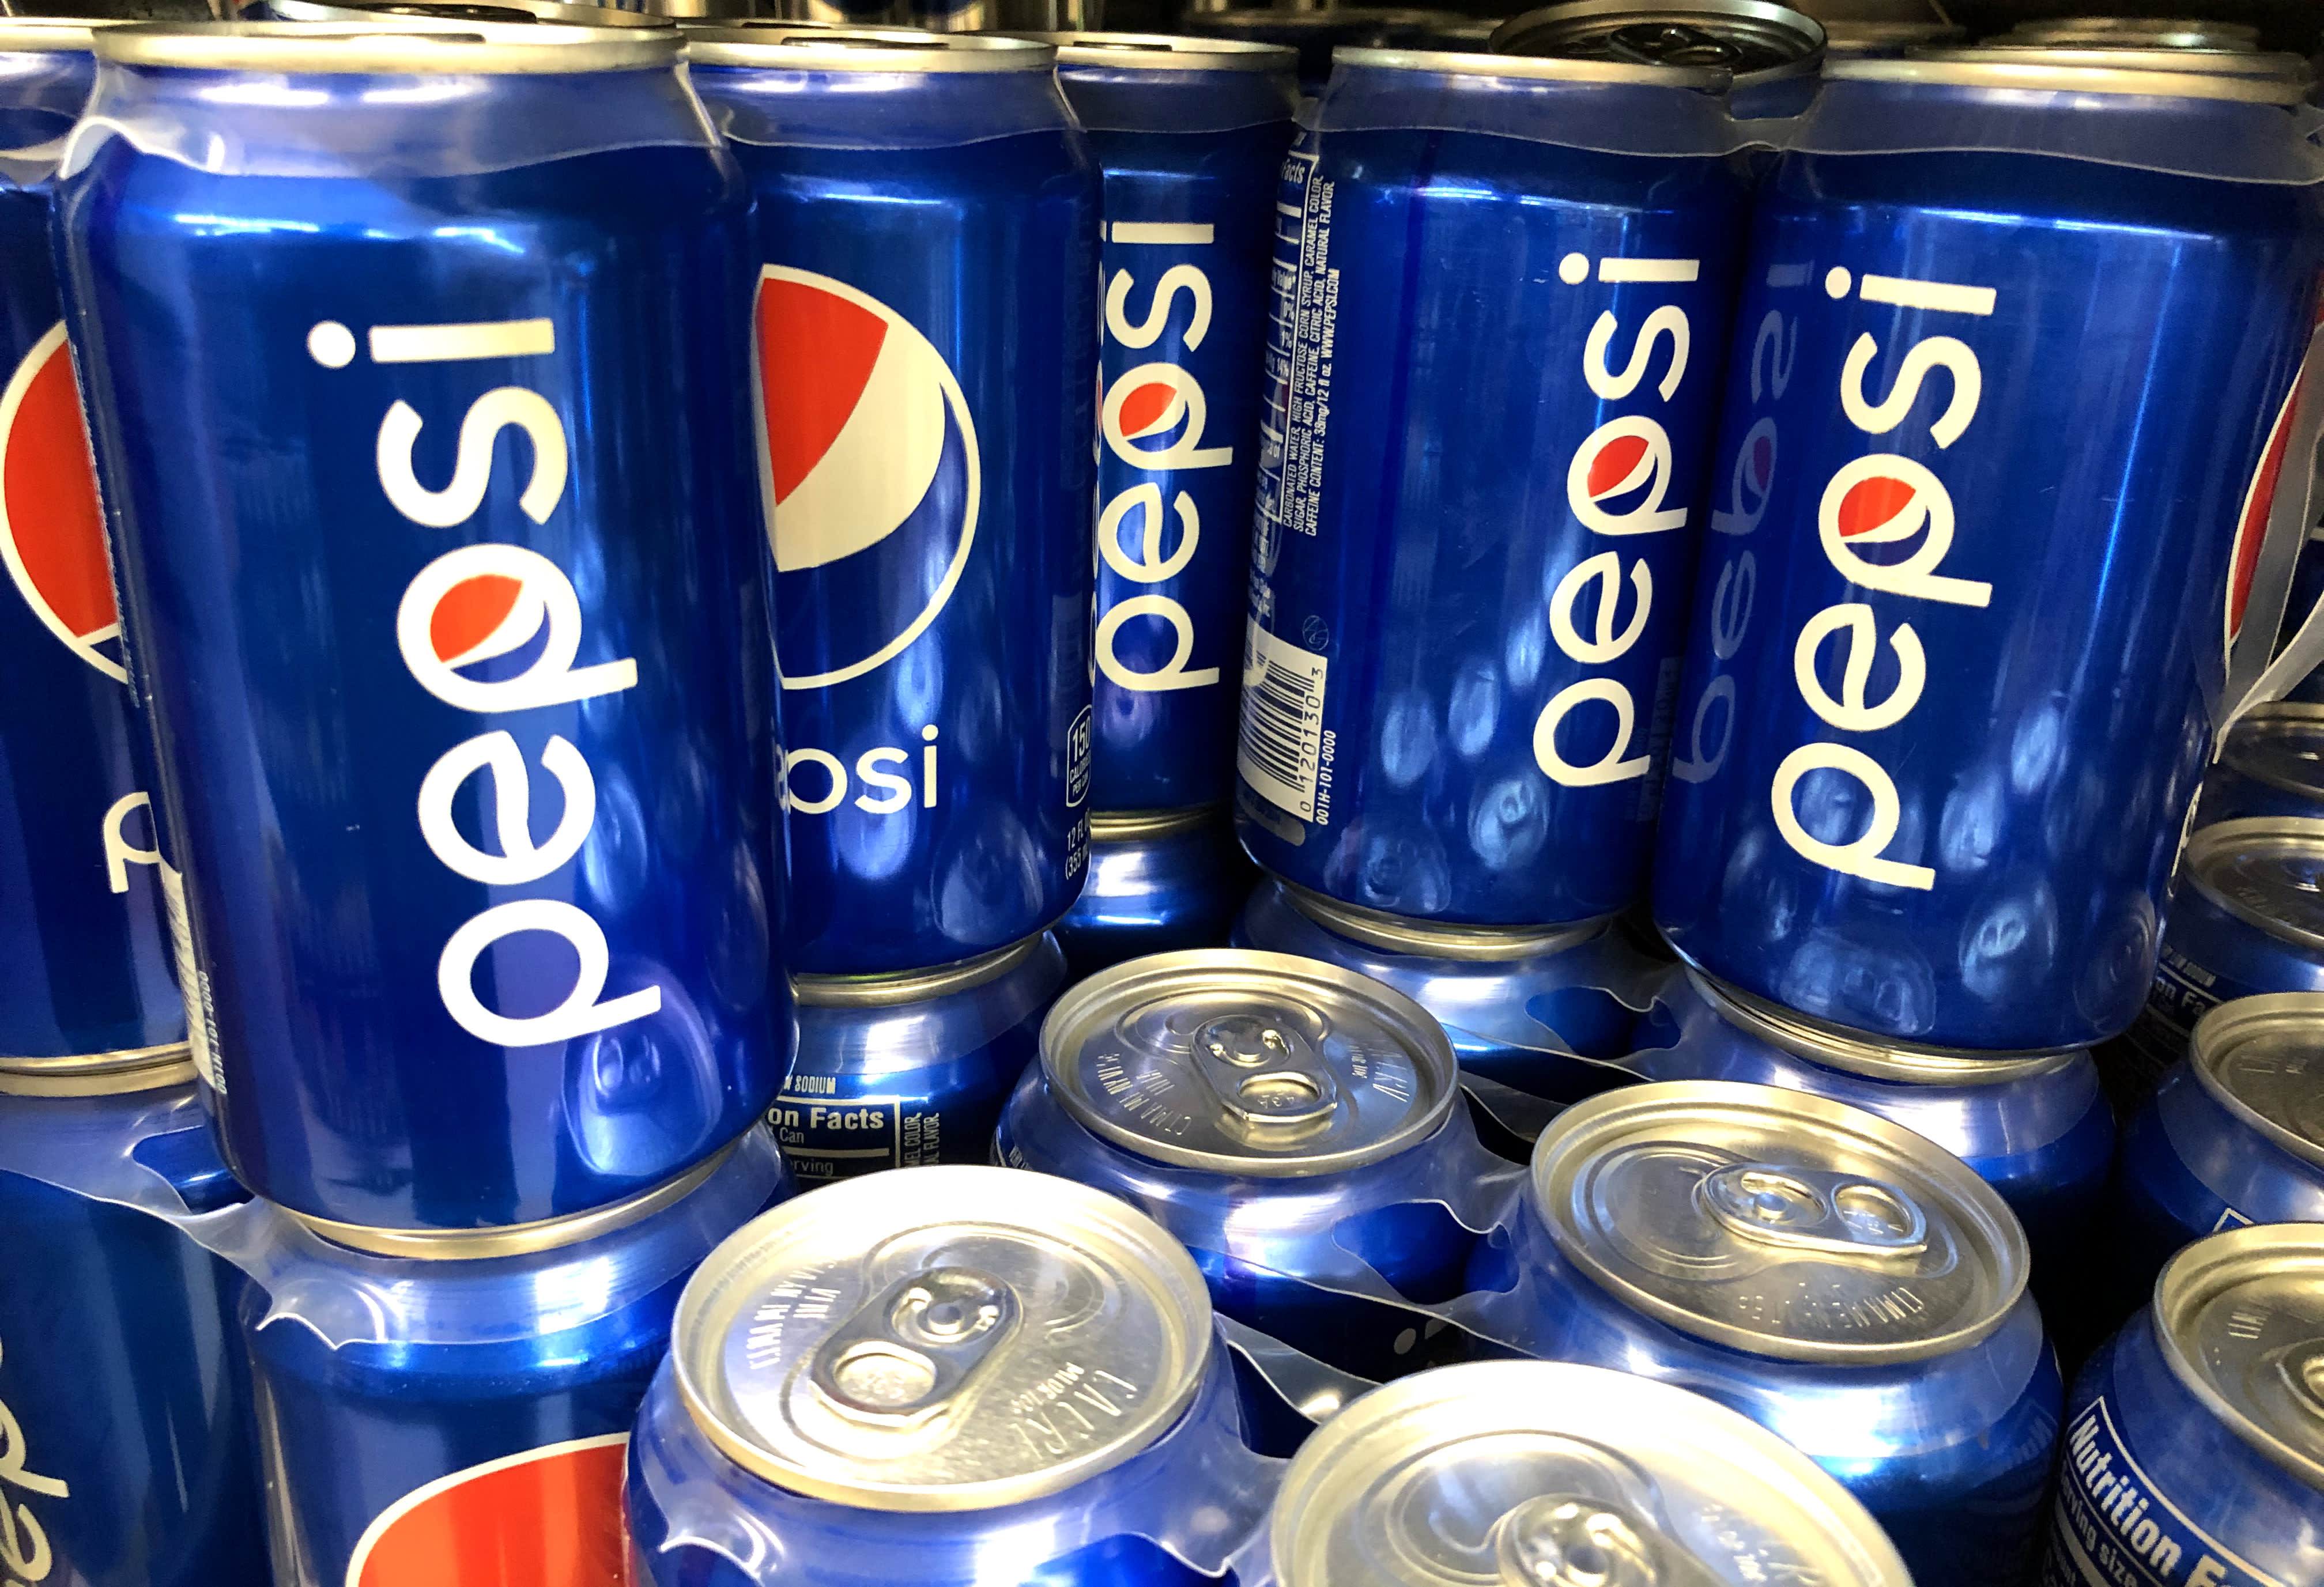 PepsiCo (PEP) Q4 2020 earnings exceeded